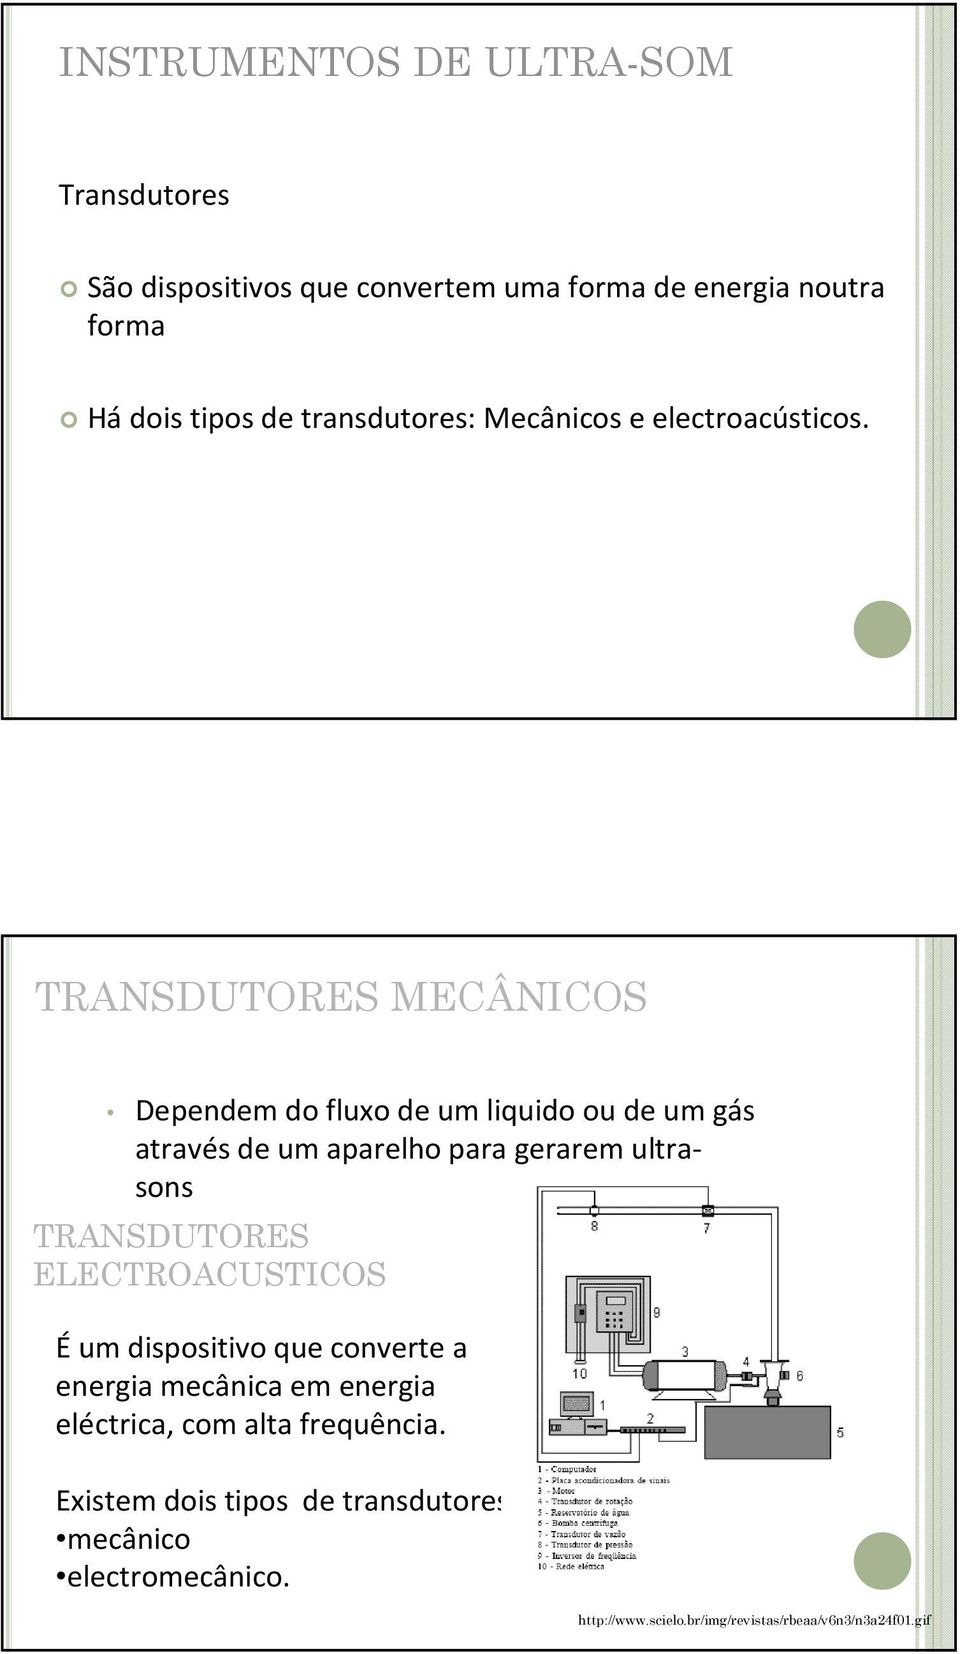 TRANSDUTORES MECÂNICOS Dependem do fluxo de um liquido ou de um gás através de um aparelho para gerarem ultrasons TRANSDUTORES